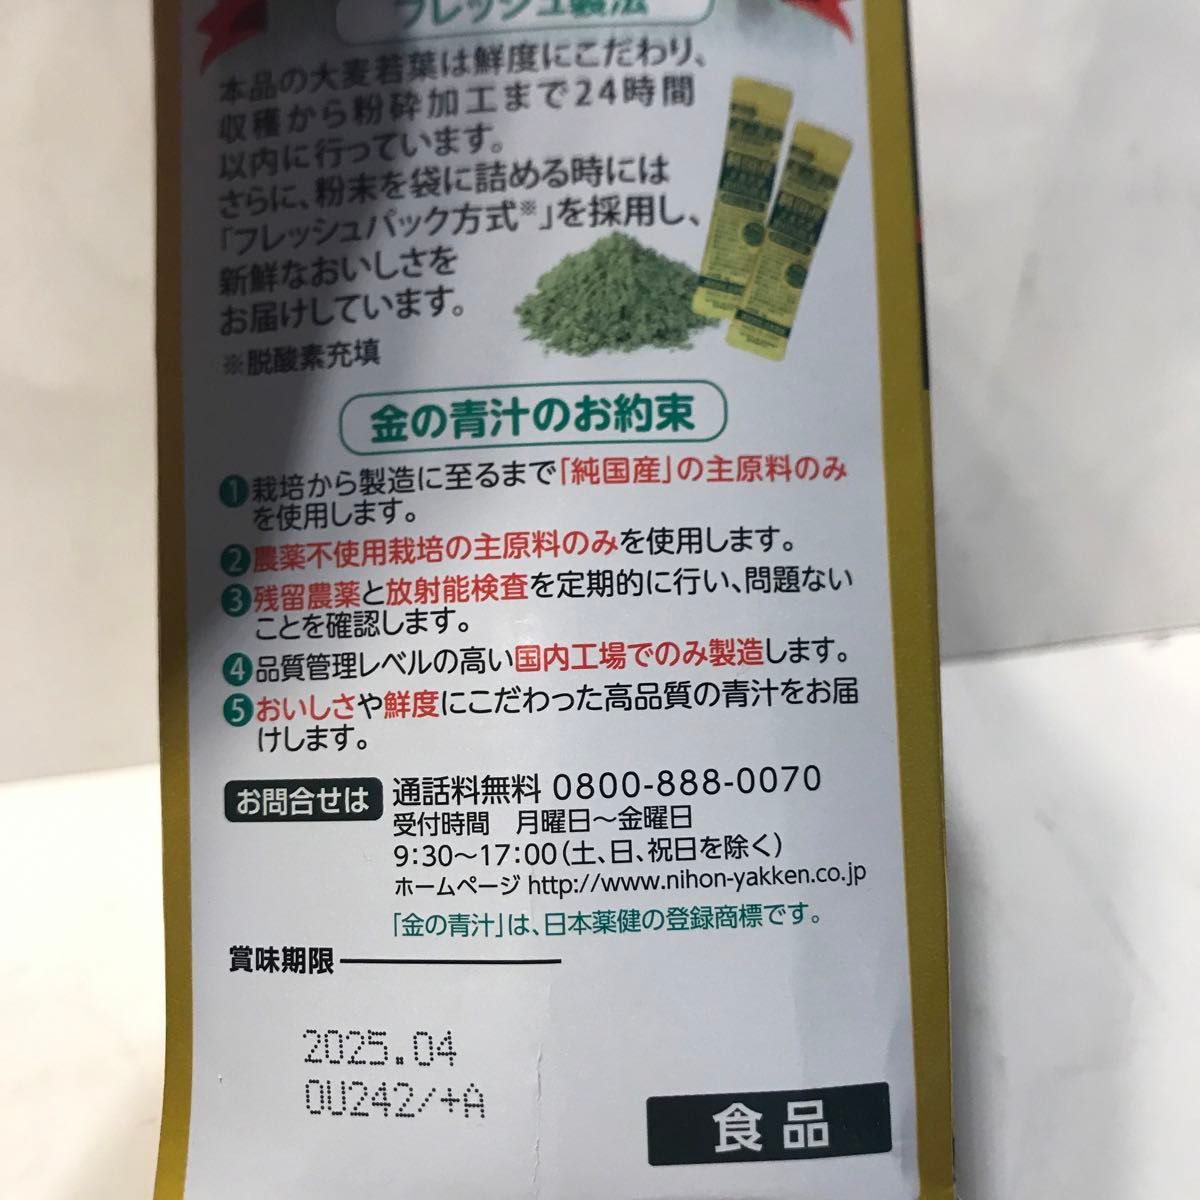 日本薬健 金の青汁 X2個2種類セット